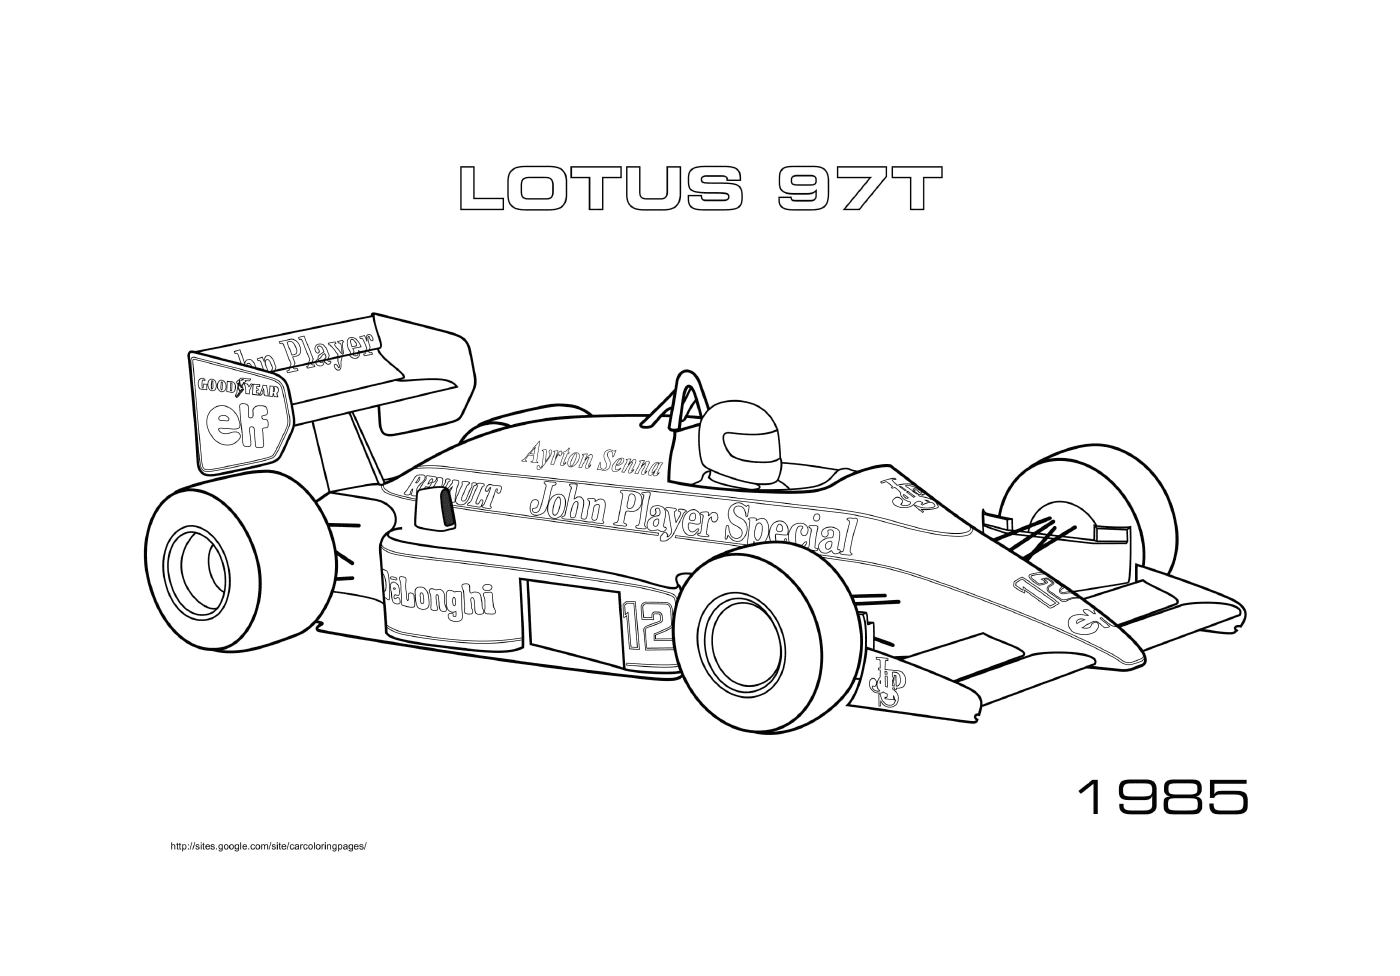  Lotus 97t de 1985 